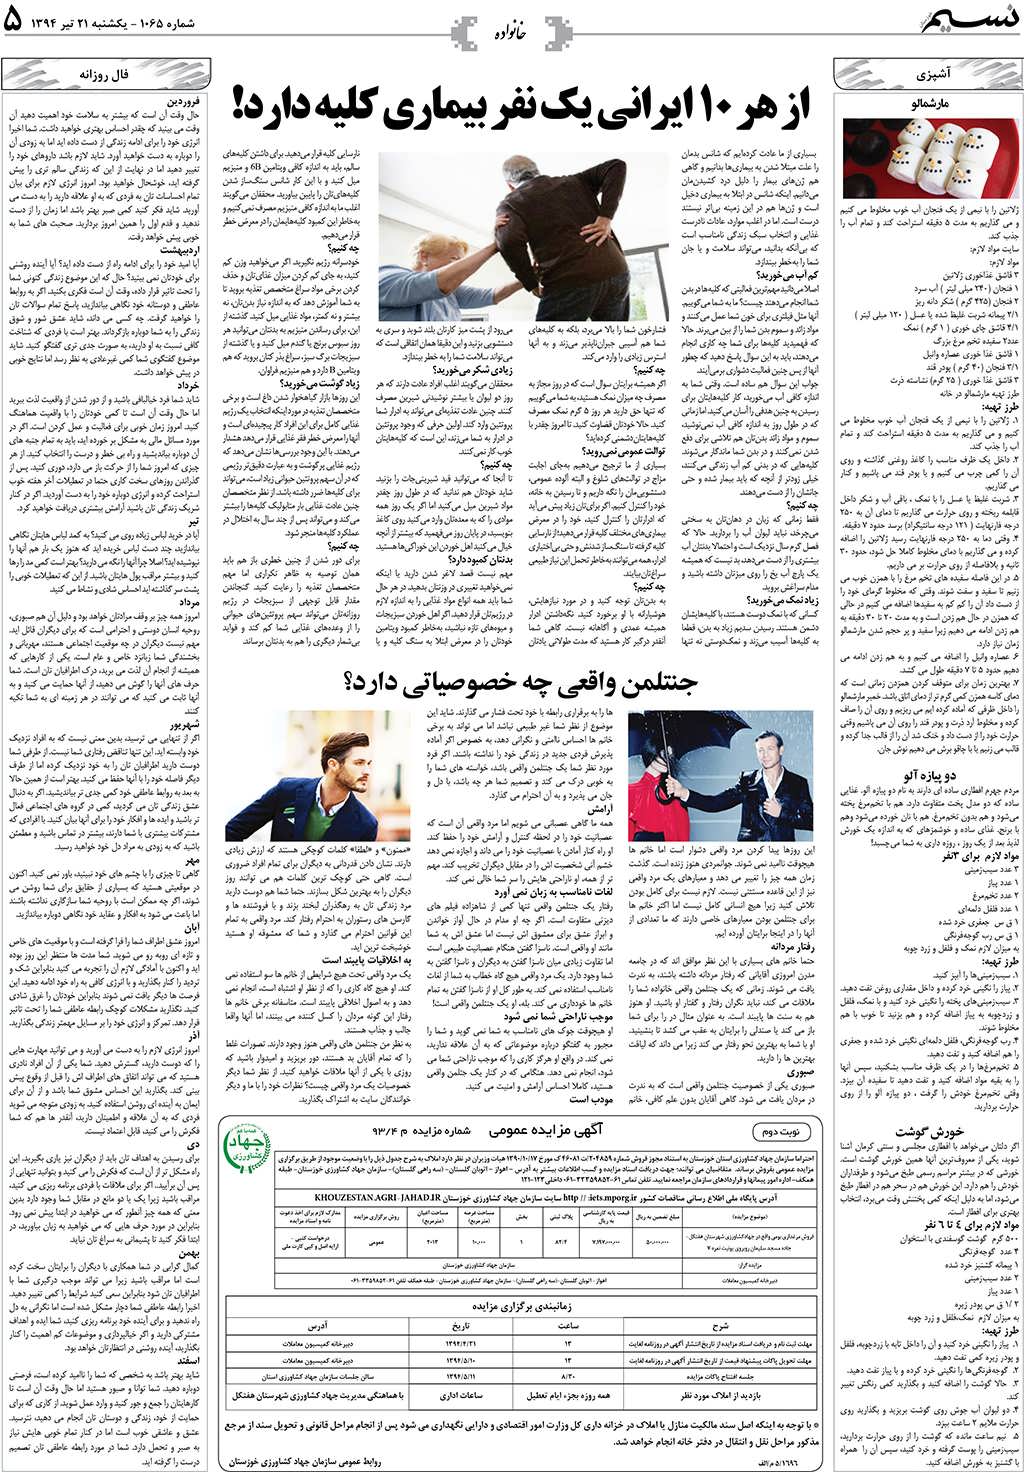 صفحه خانواده روزنامه نسیم شماره 1065